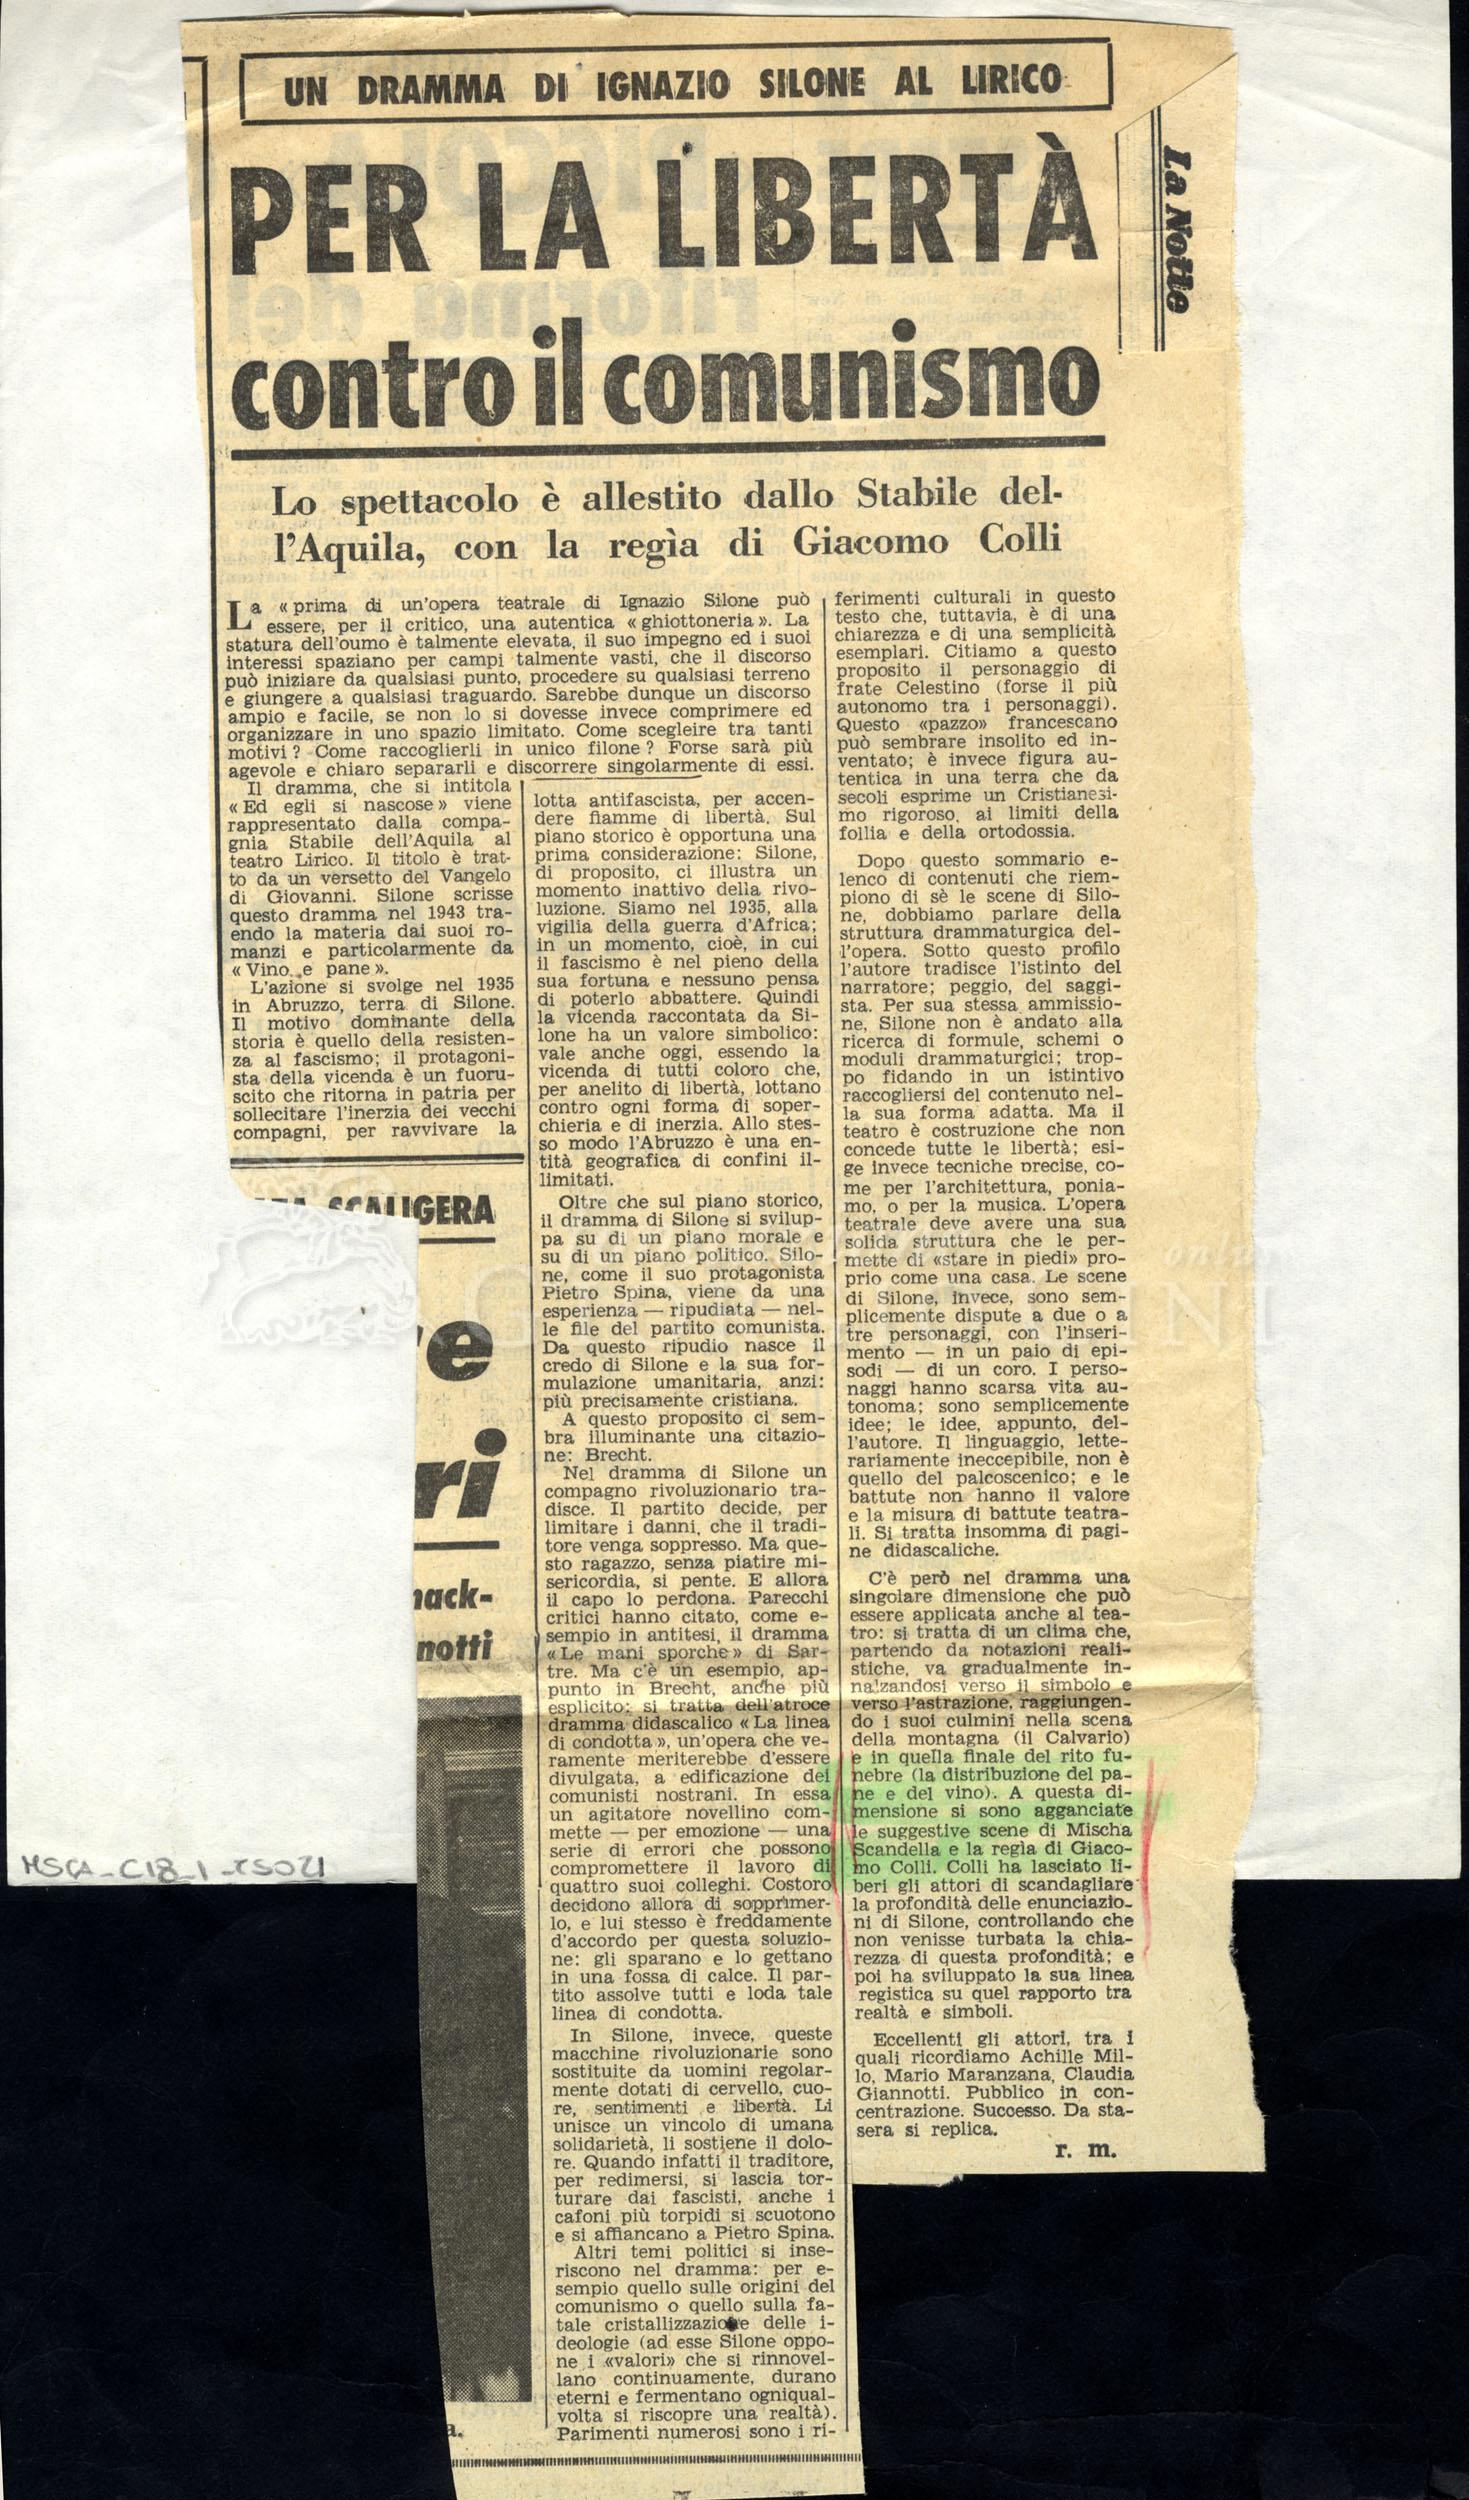 Per la libertà contro il comunismo
				 : Un dramma di Ignazio Silone al Lirico marzo 1966